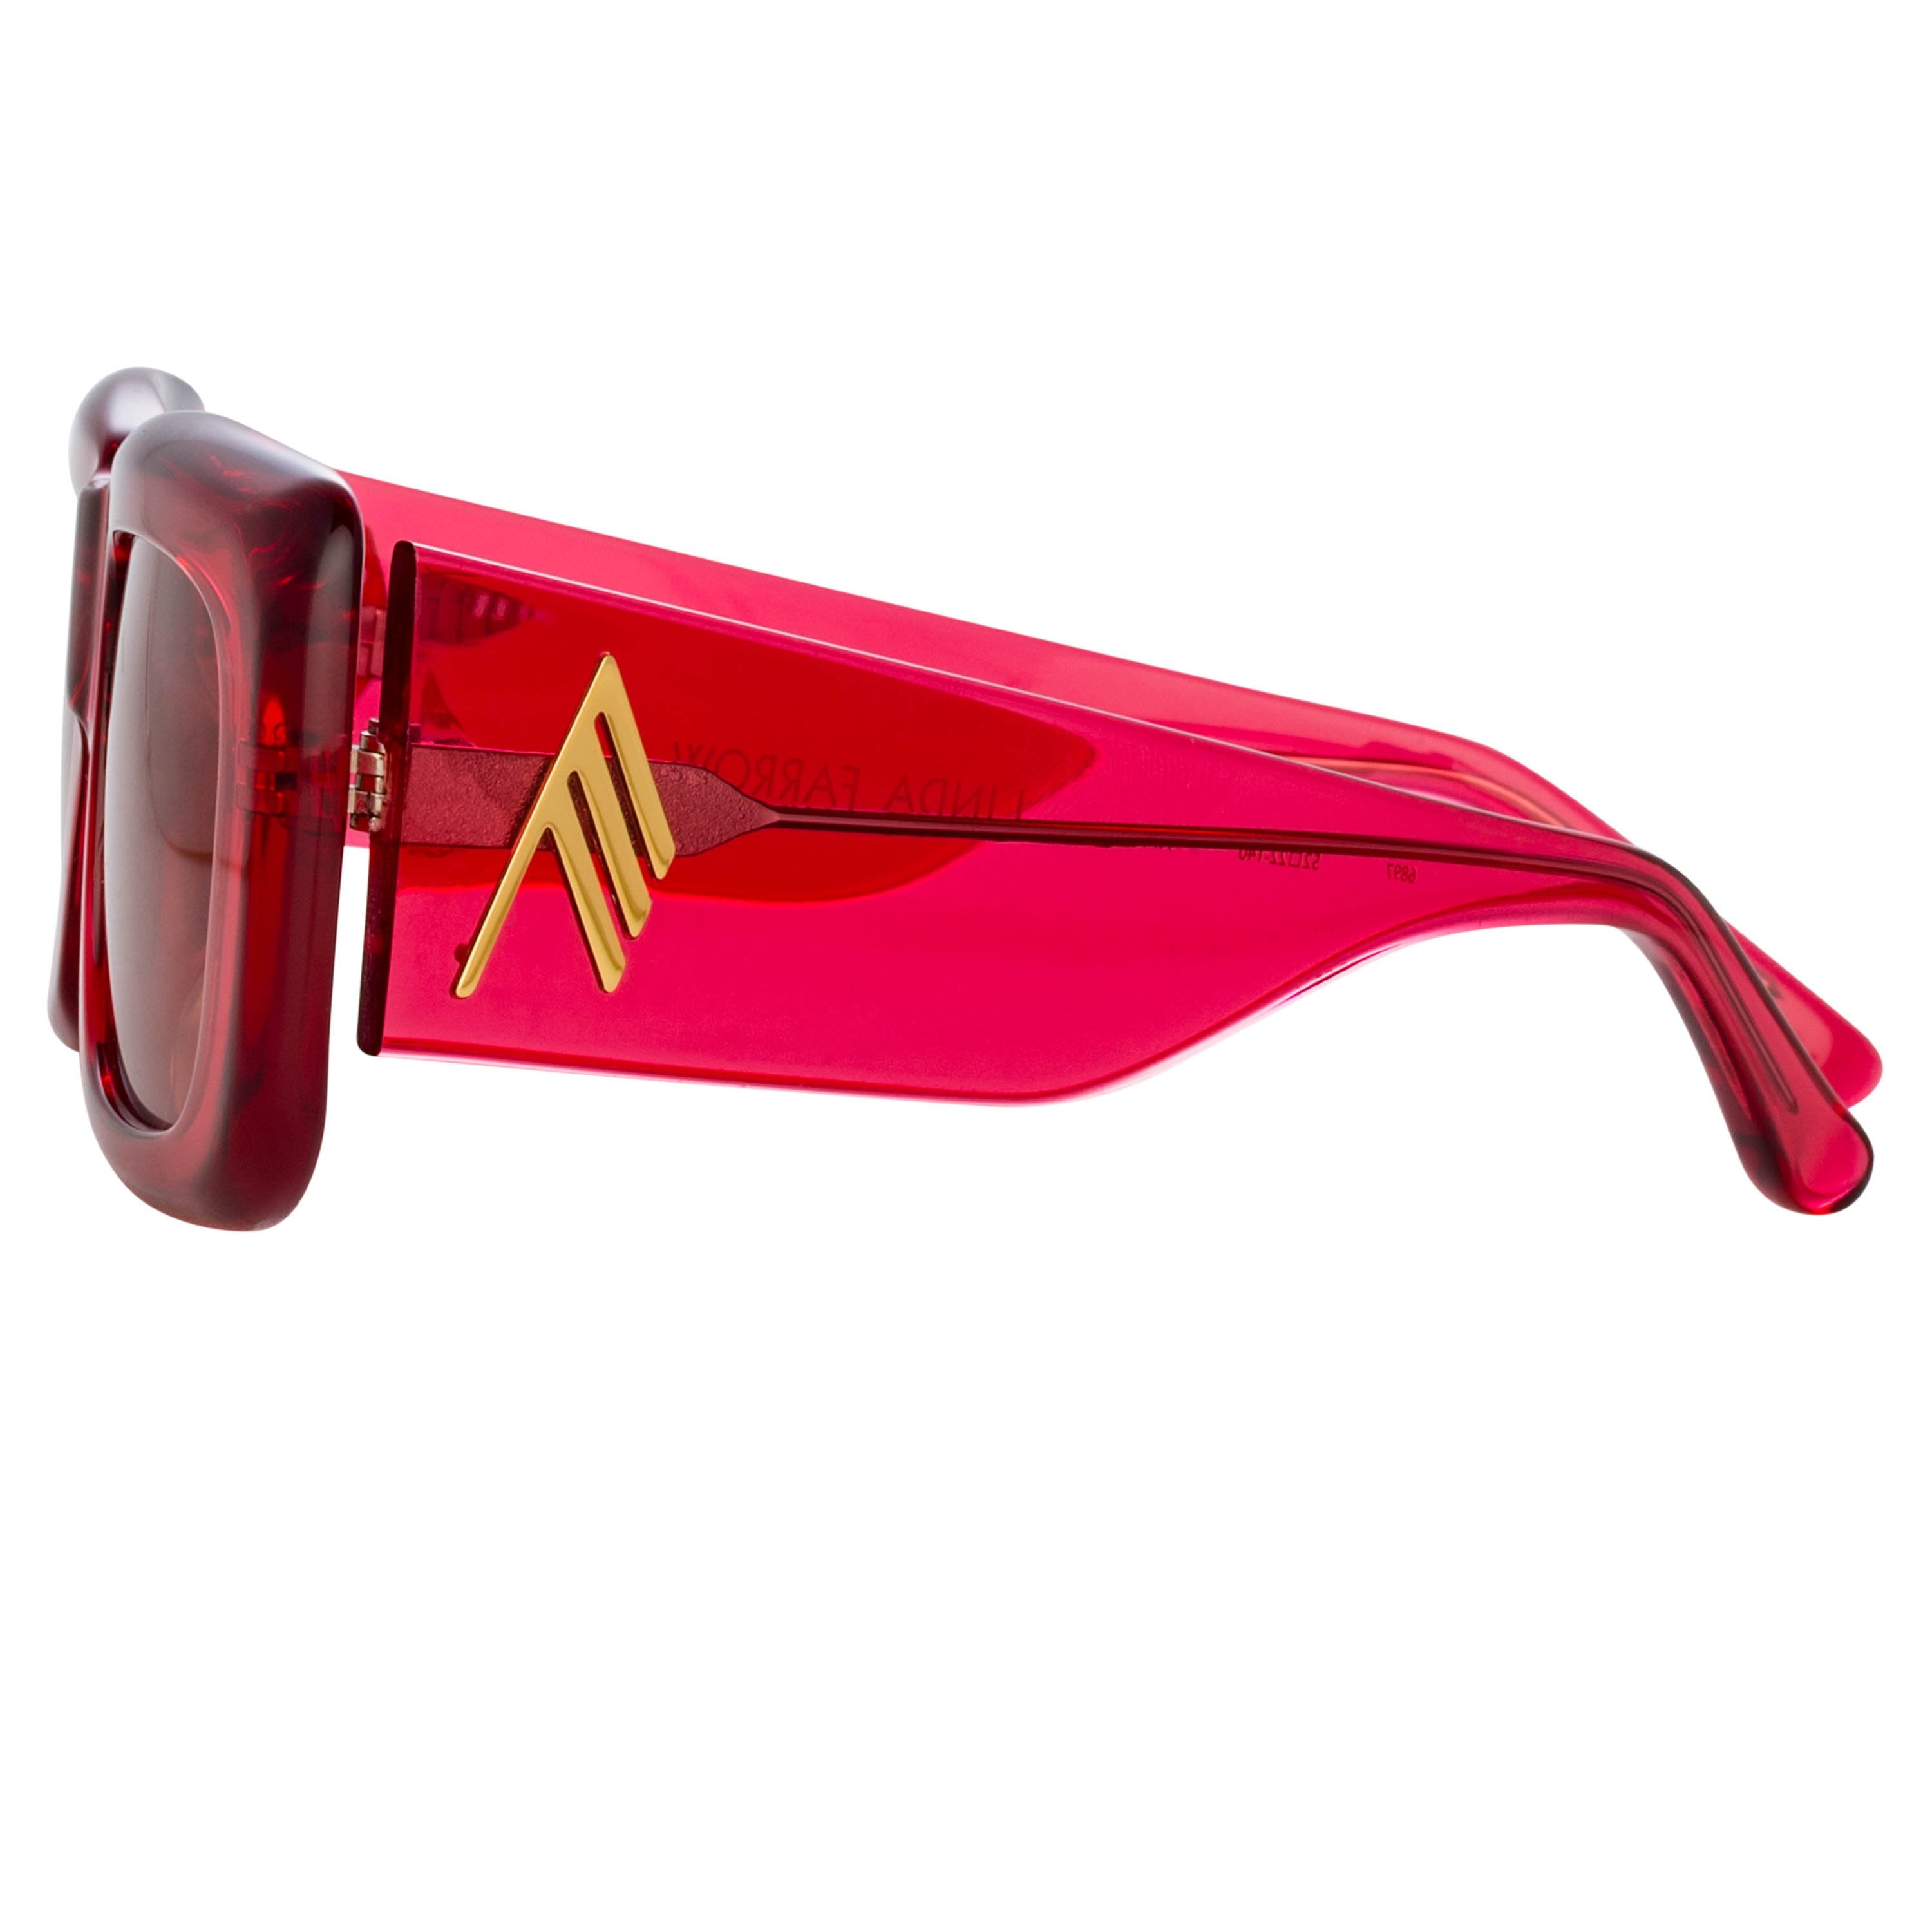 Color_ATTICO3C11SUN - The Attico Marfa Rectangular Sunglasses in Red